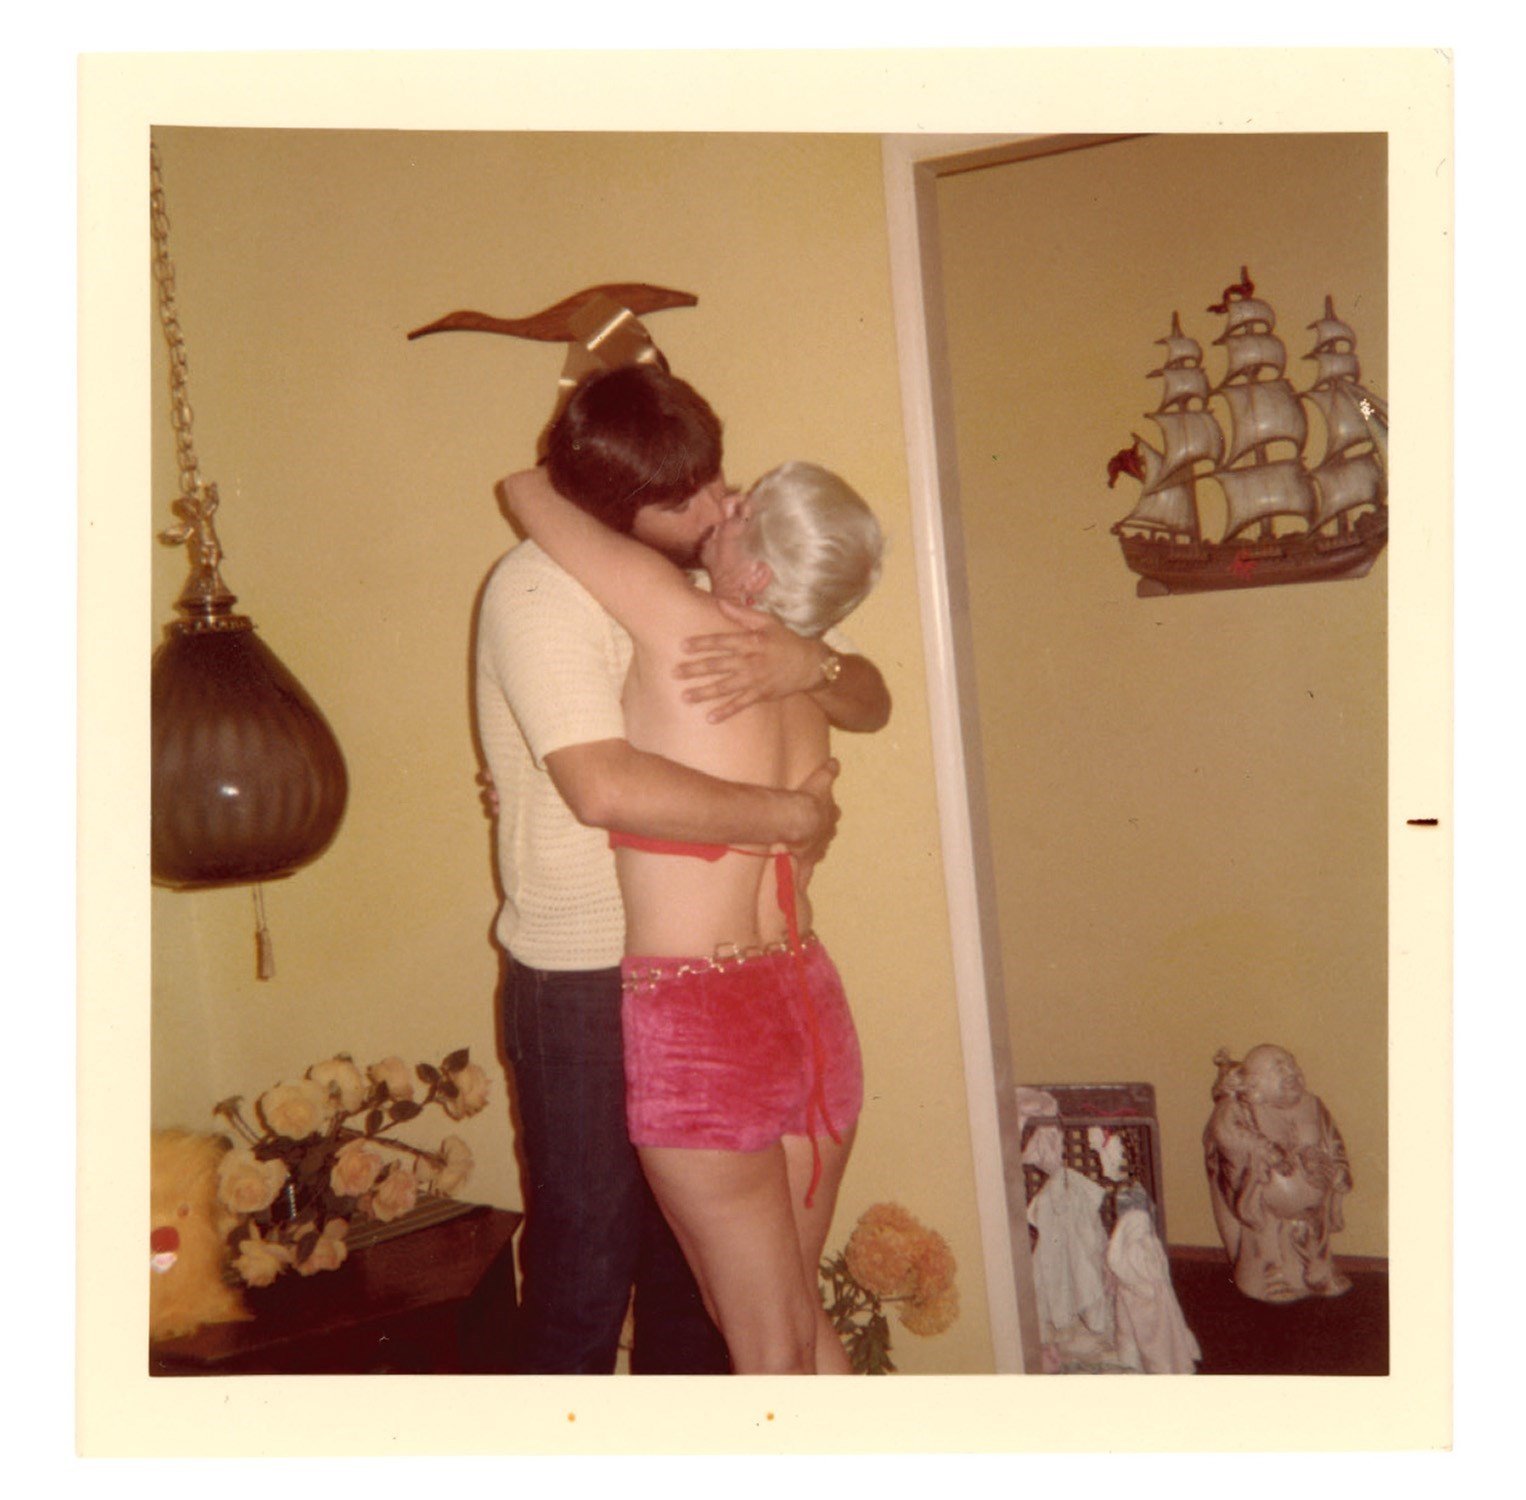 Машина часу: архівні фото про те, як цілувалися закохані 100 років тому - фото 486036